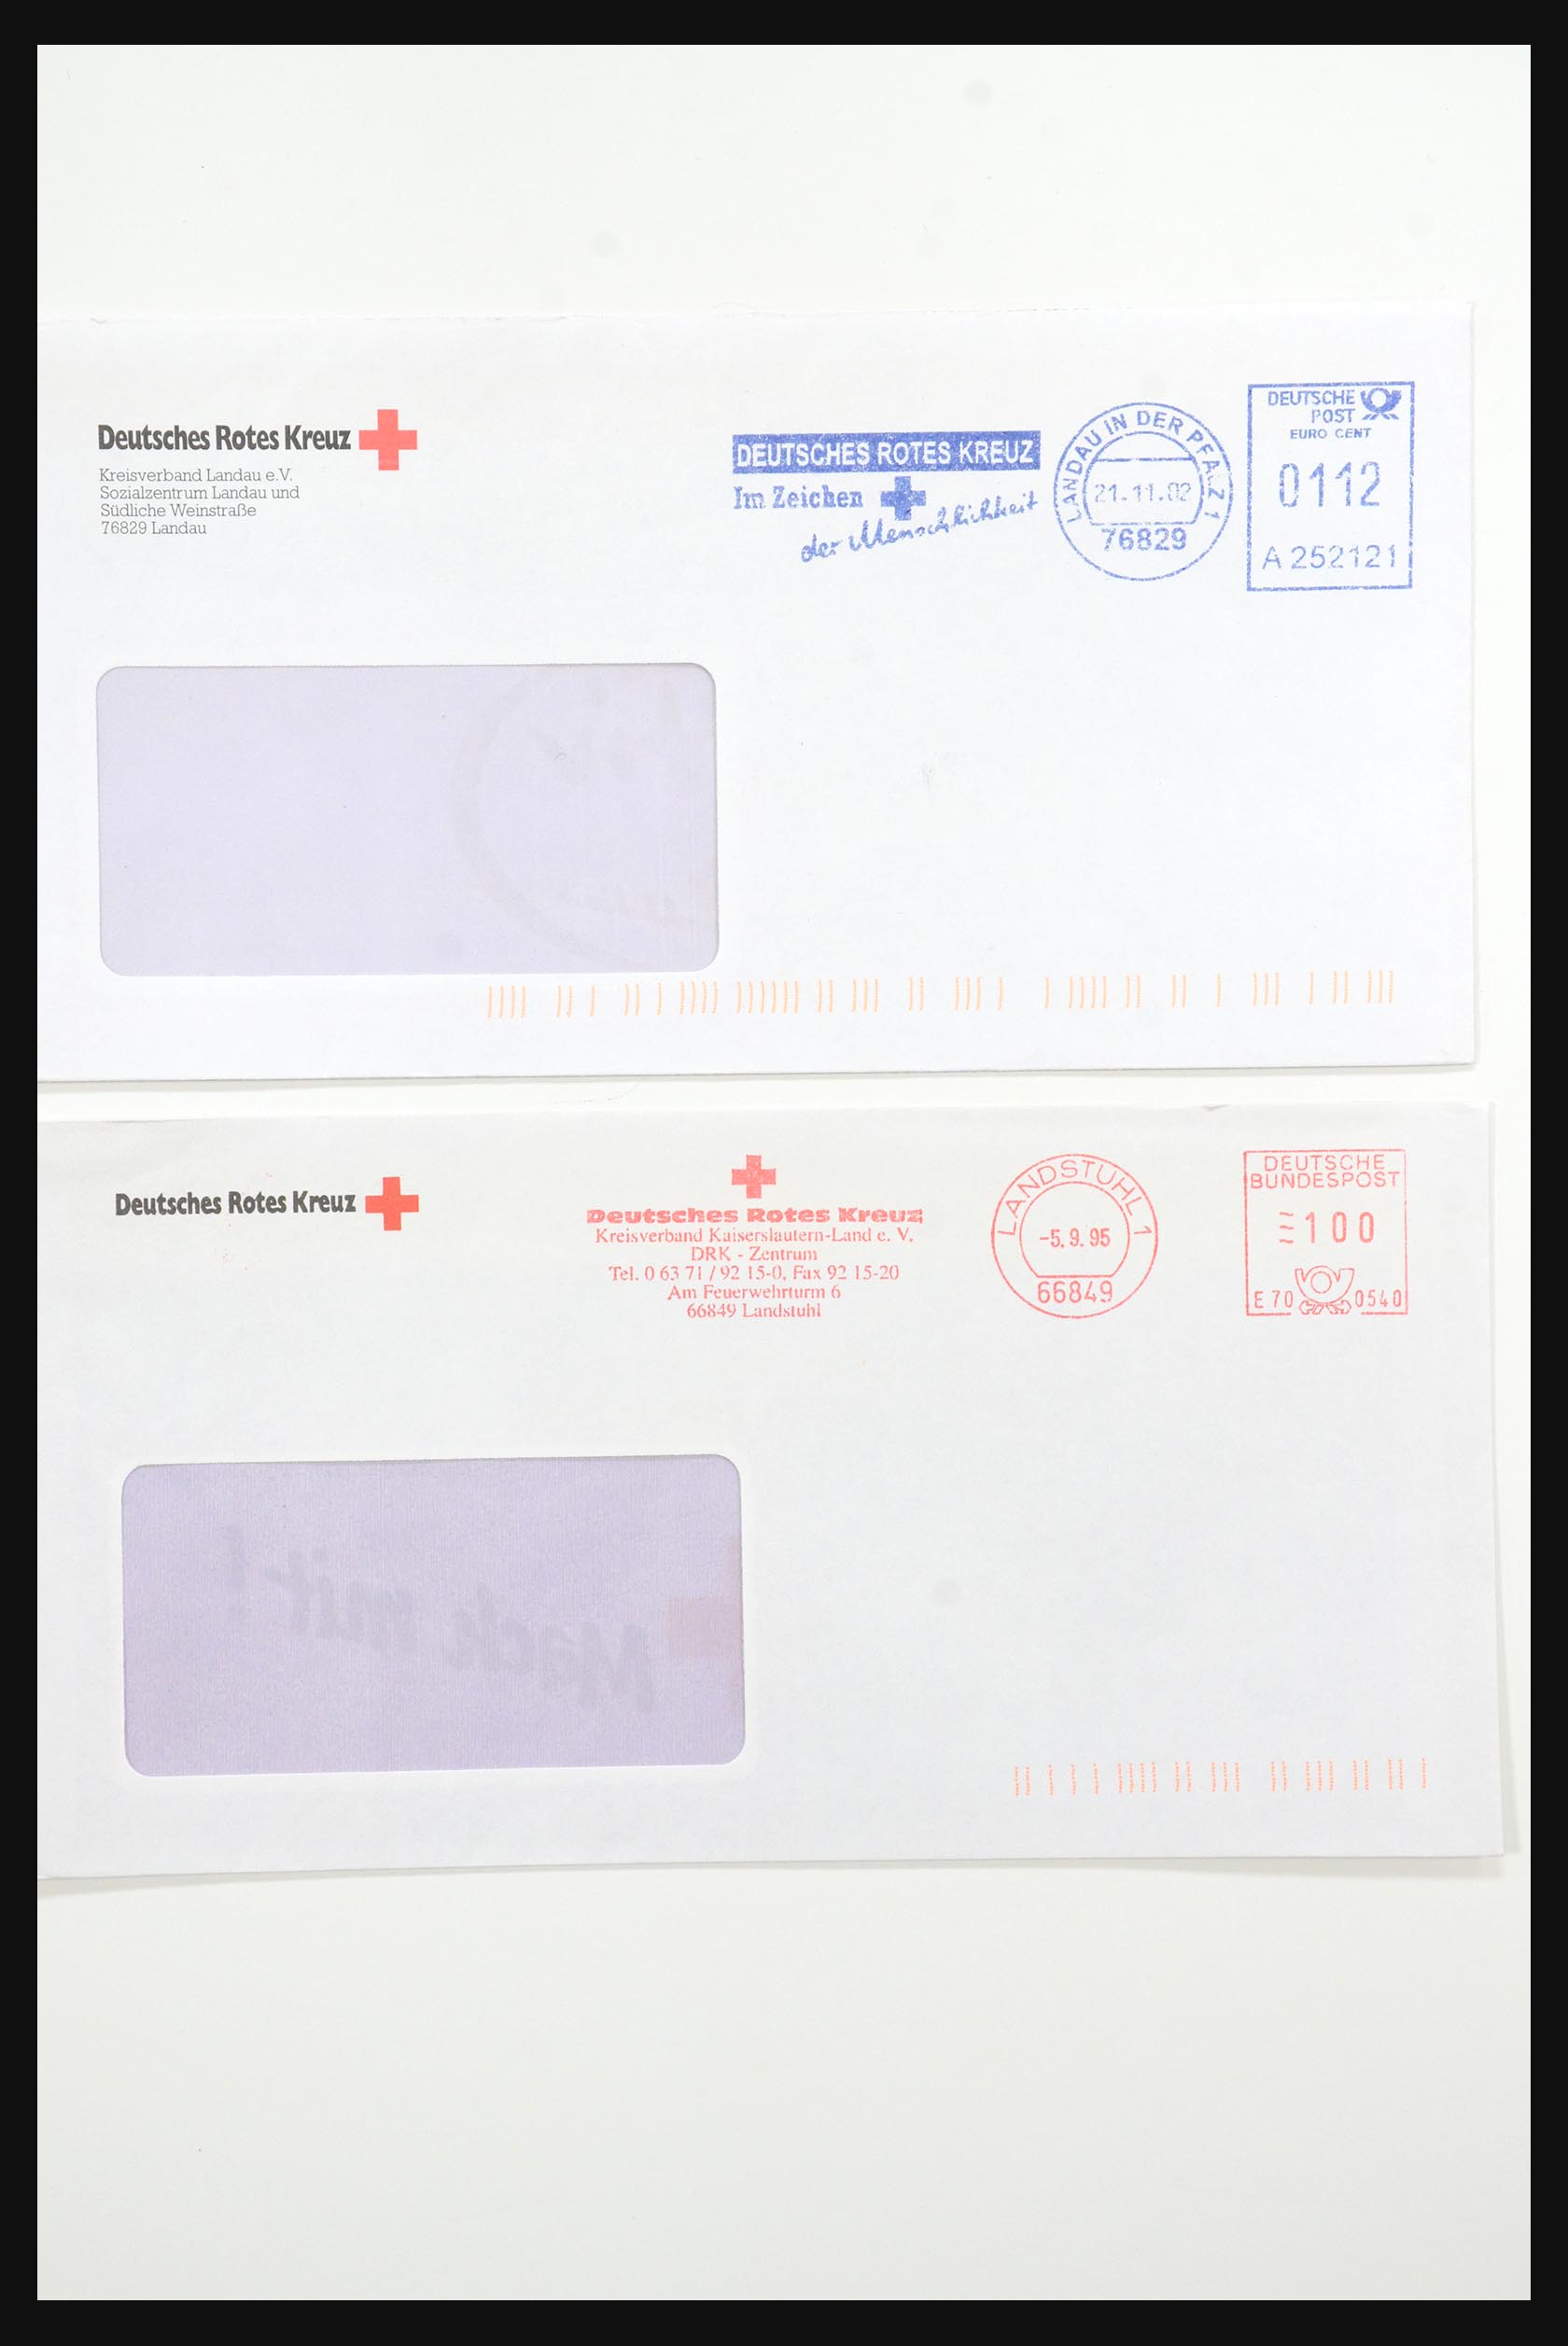 31365 1086 - 31365 Rode kruis brieven 1905-1975.